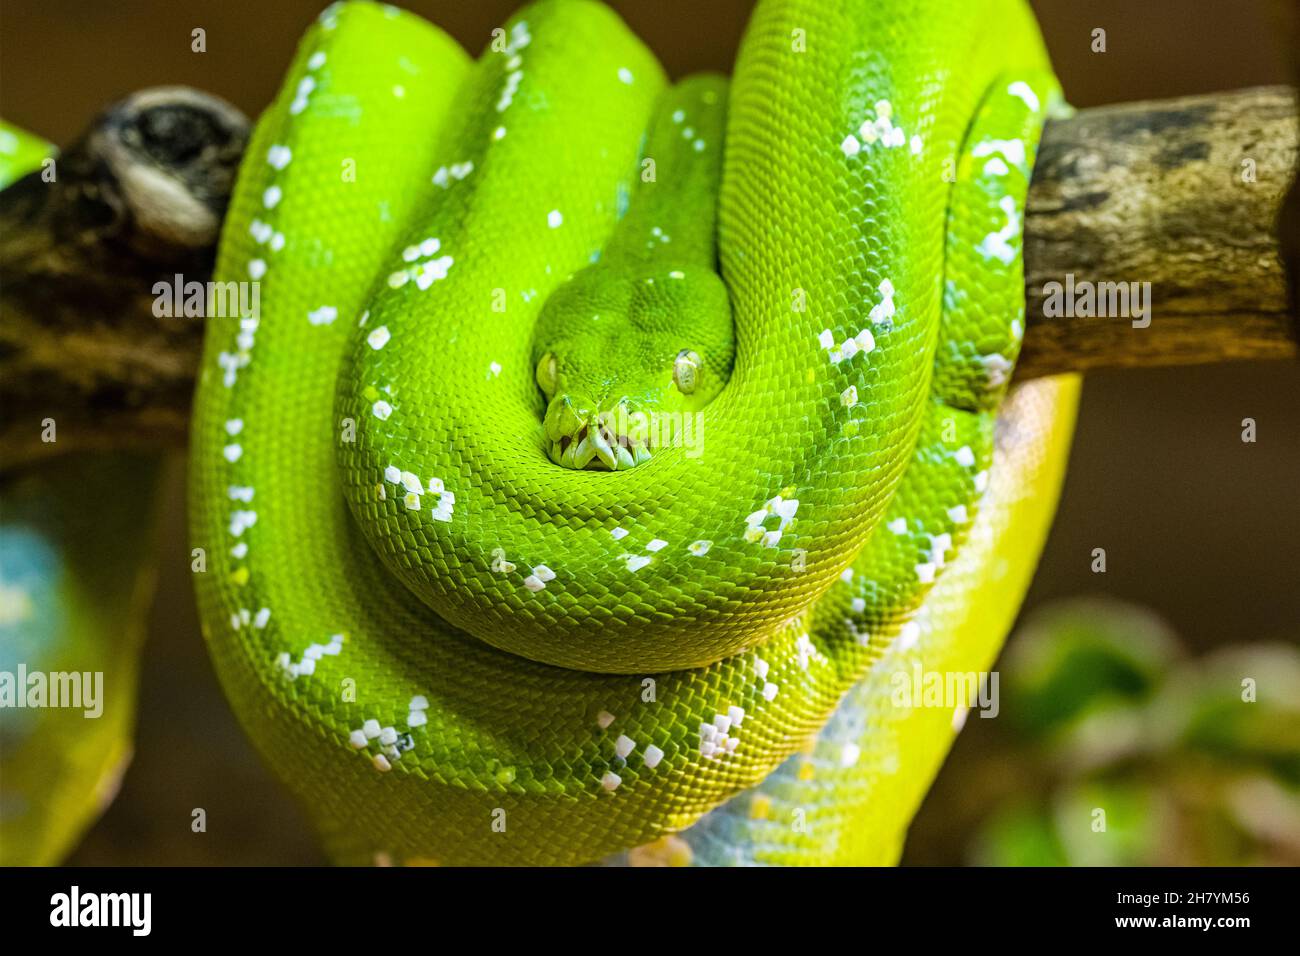 Un python d'arbre vert (Morelia viridis) enroulé sur une branche d'arbre. Banque D'Images